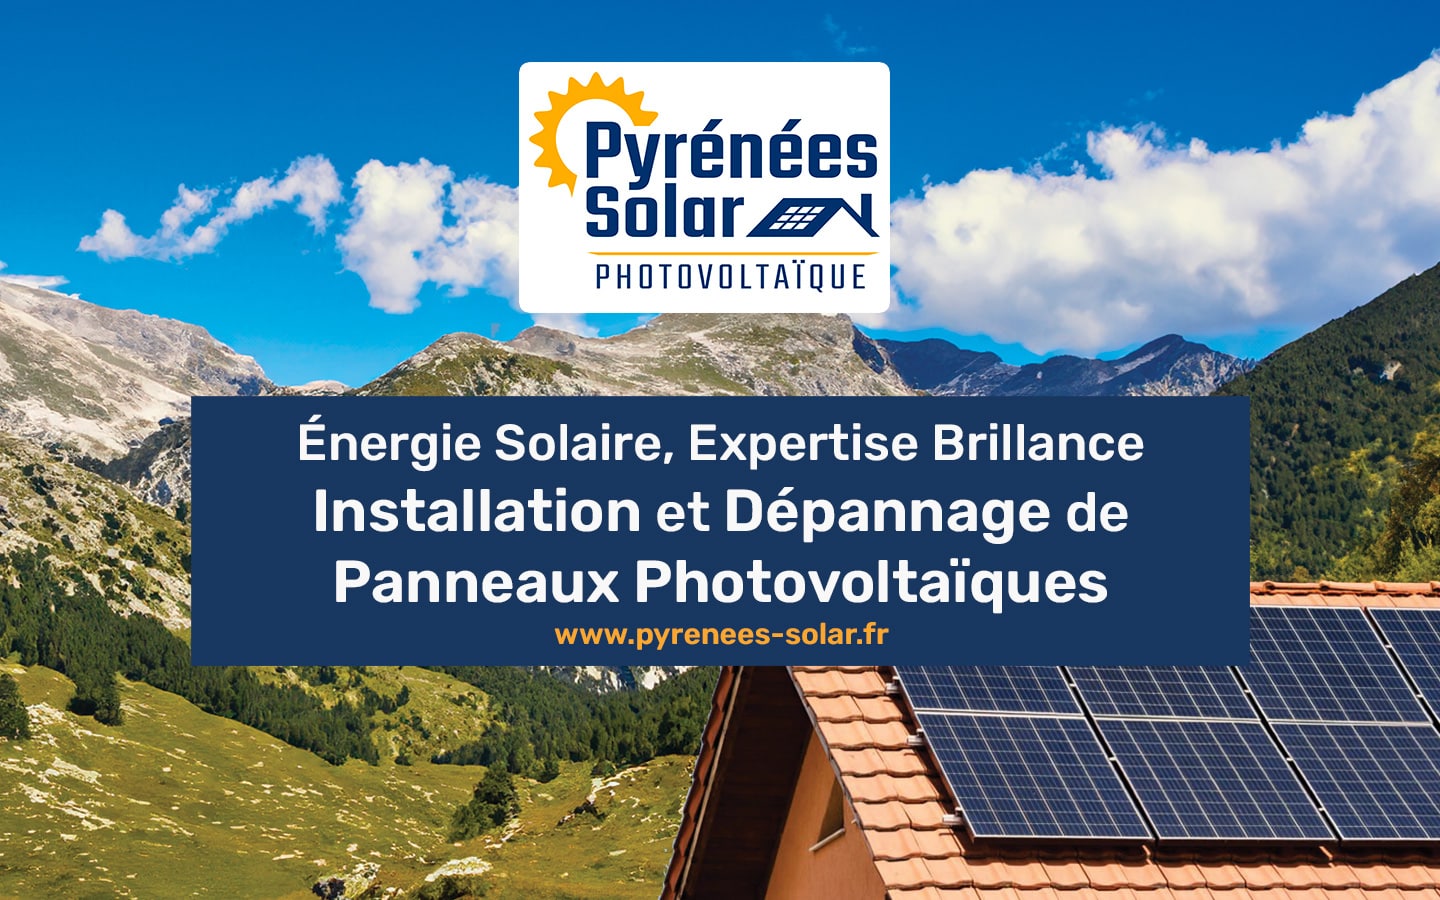 Pyrénées Solar